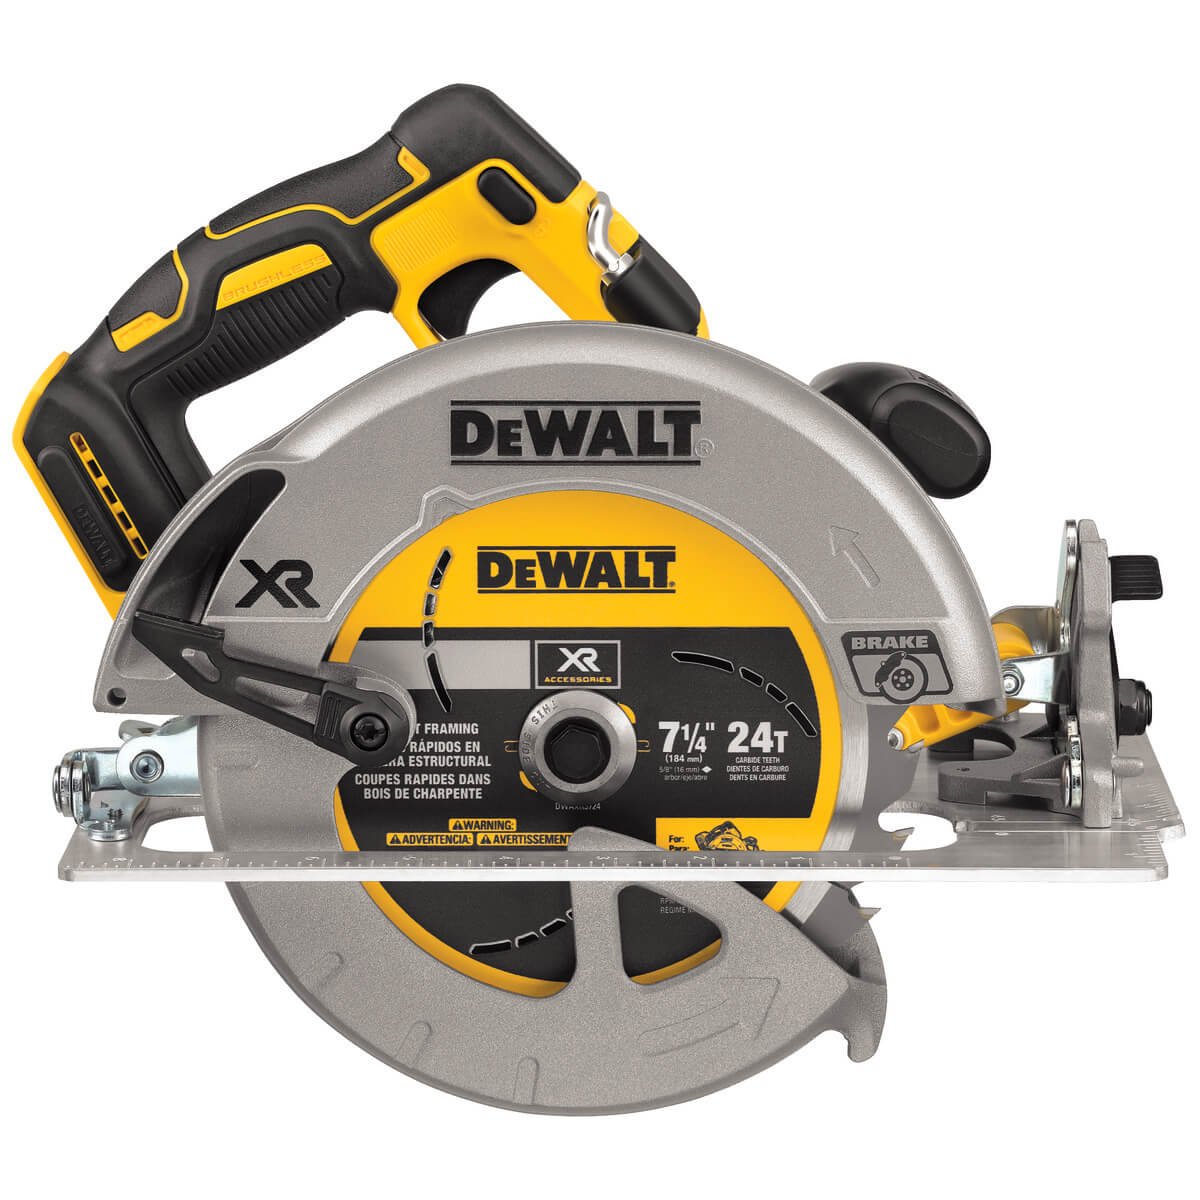 Dewalt DCS570B 20V MAX XR 7-1/4" Circular Saw - TOOL ONLY